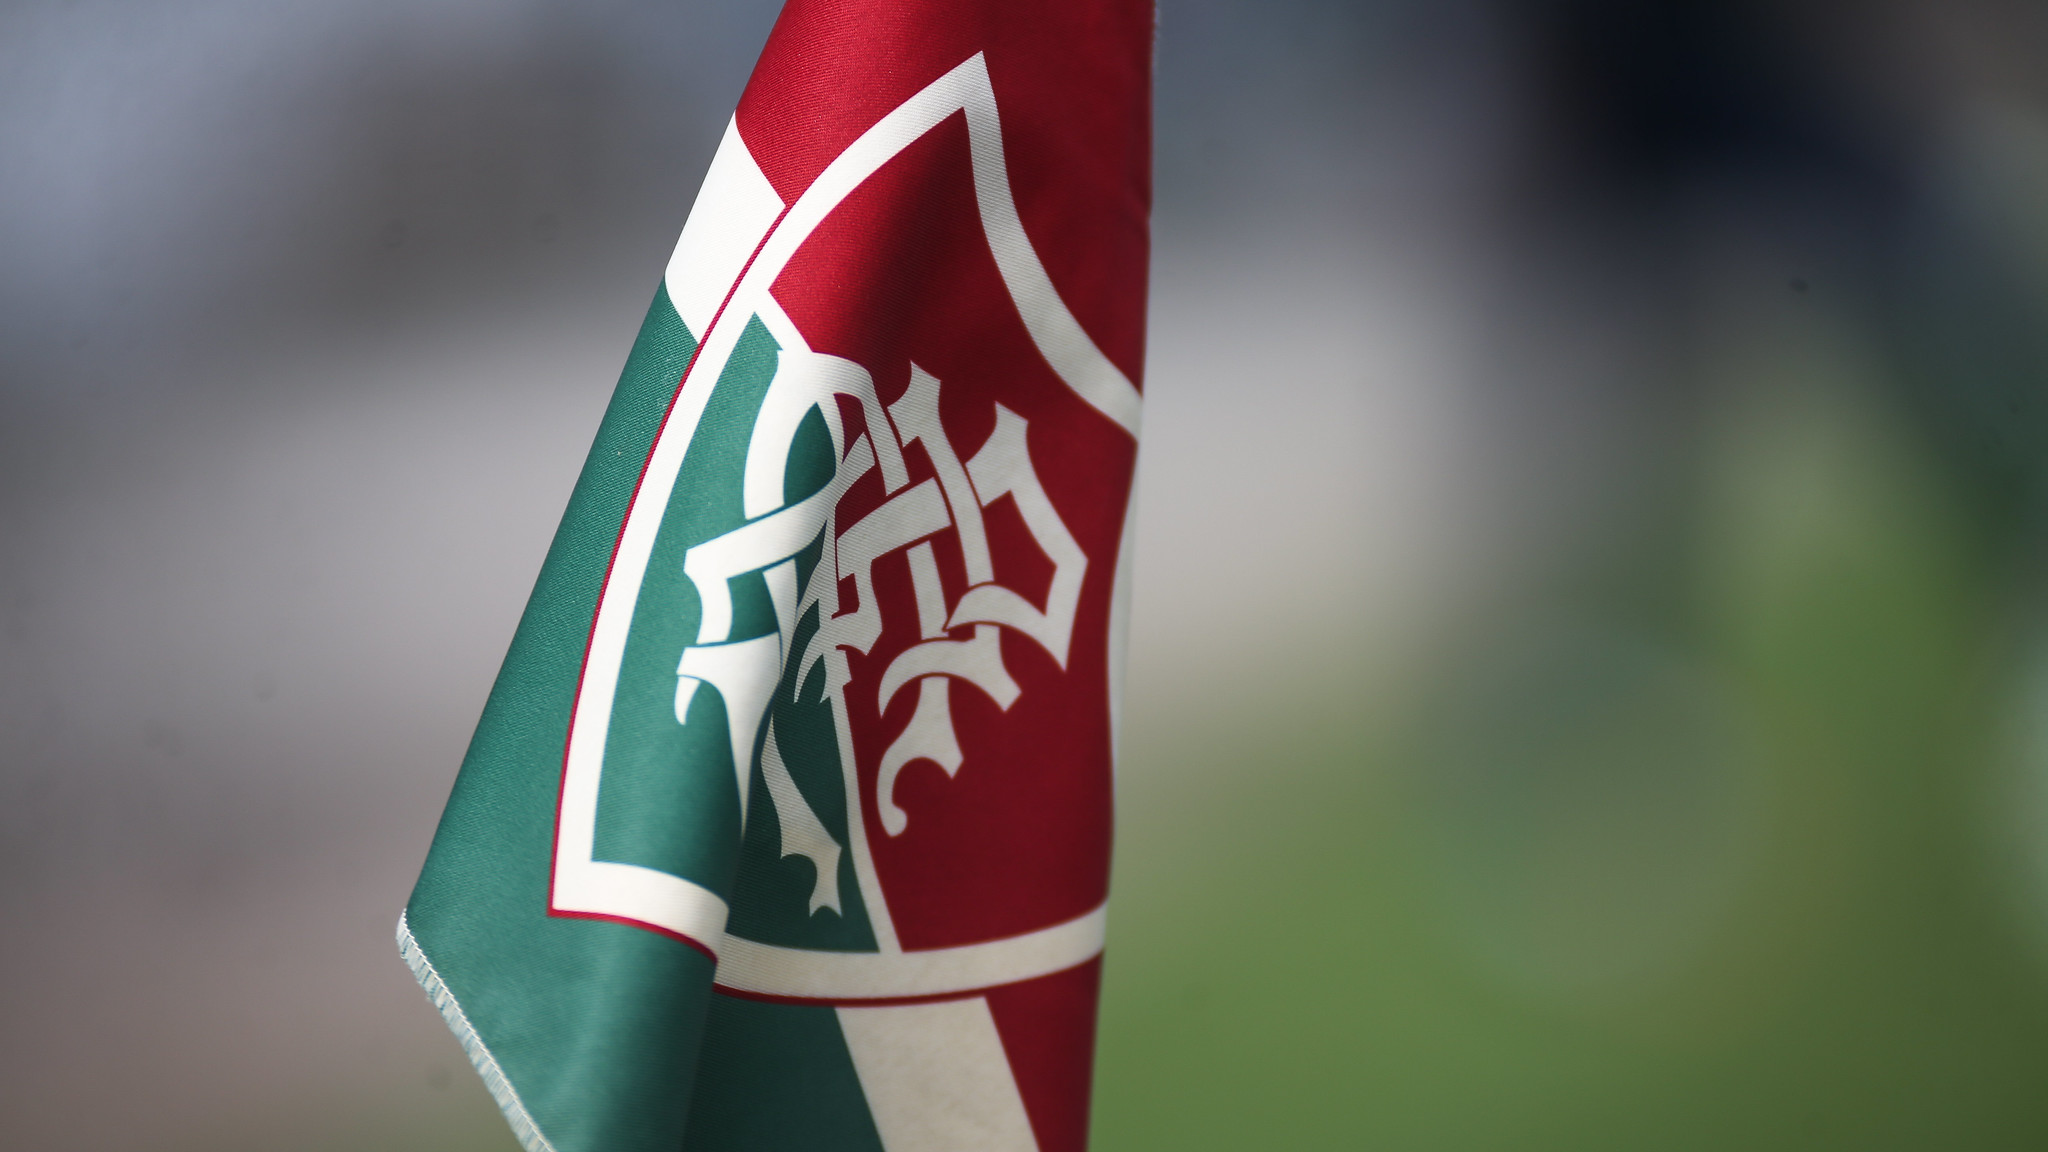 Treino do Fluminense – Bandeira – Escudo